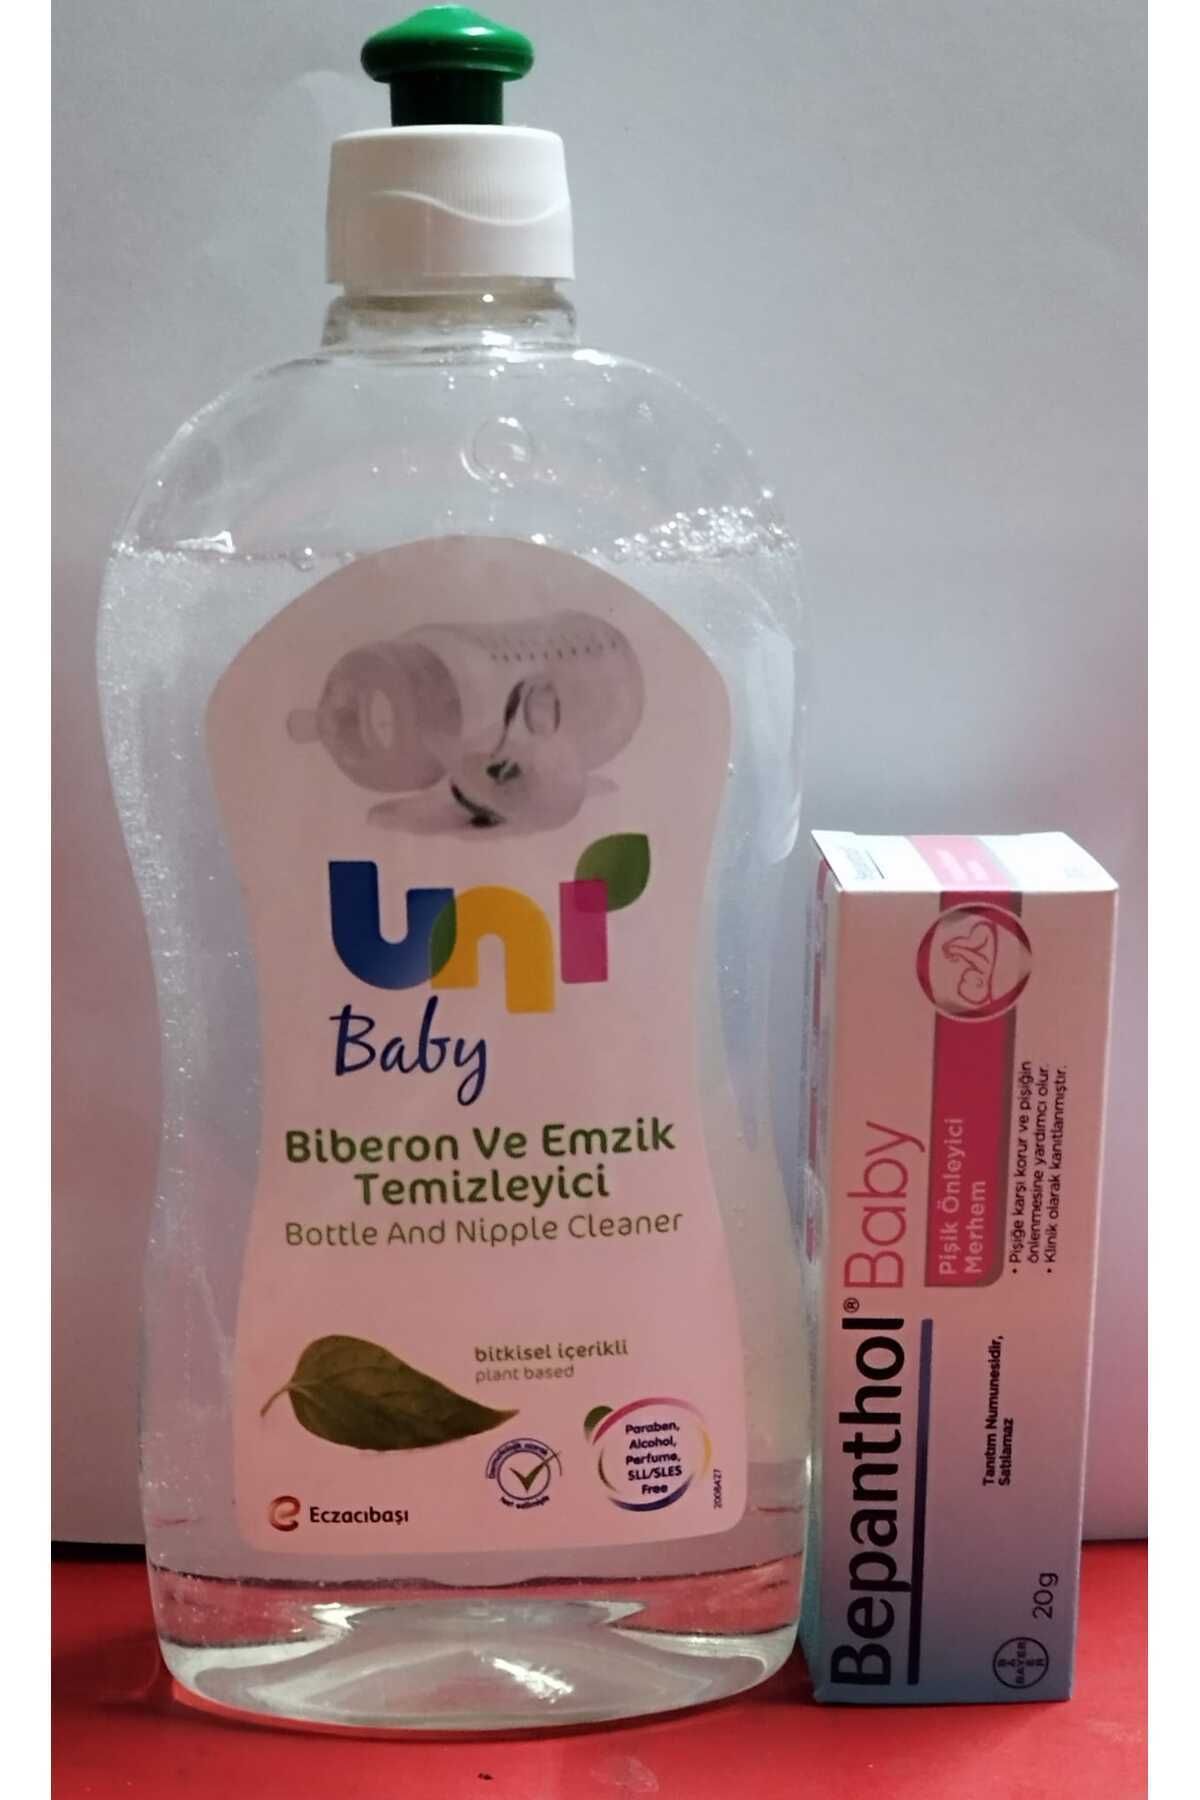 Uni baby emzik biberon temizleyici 500ml+bephantol 20 Gr pişik kremi hediyeli